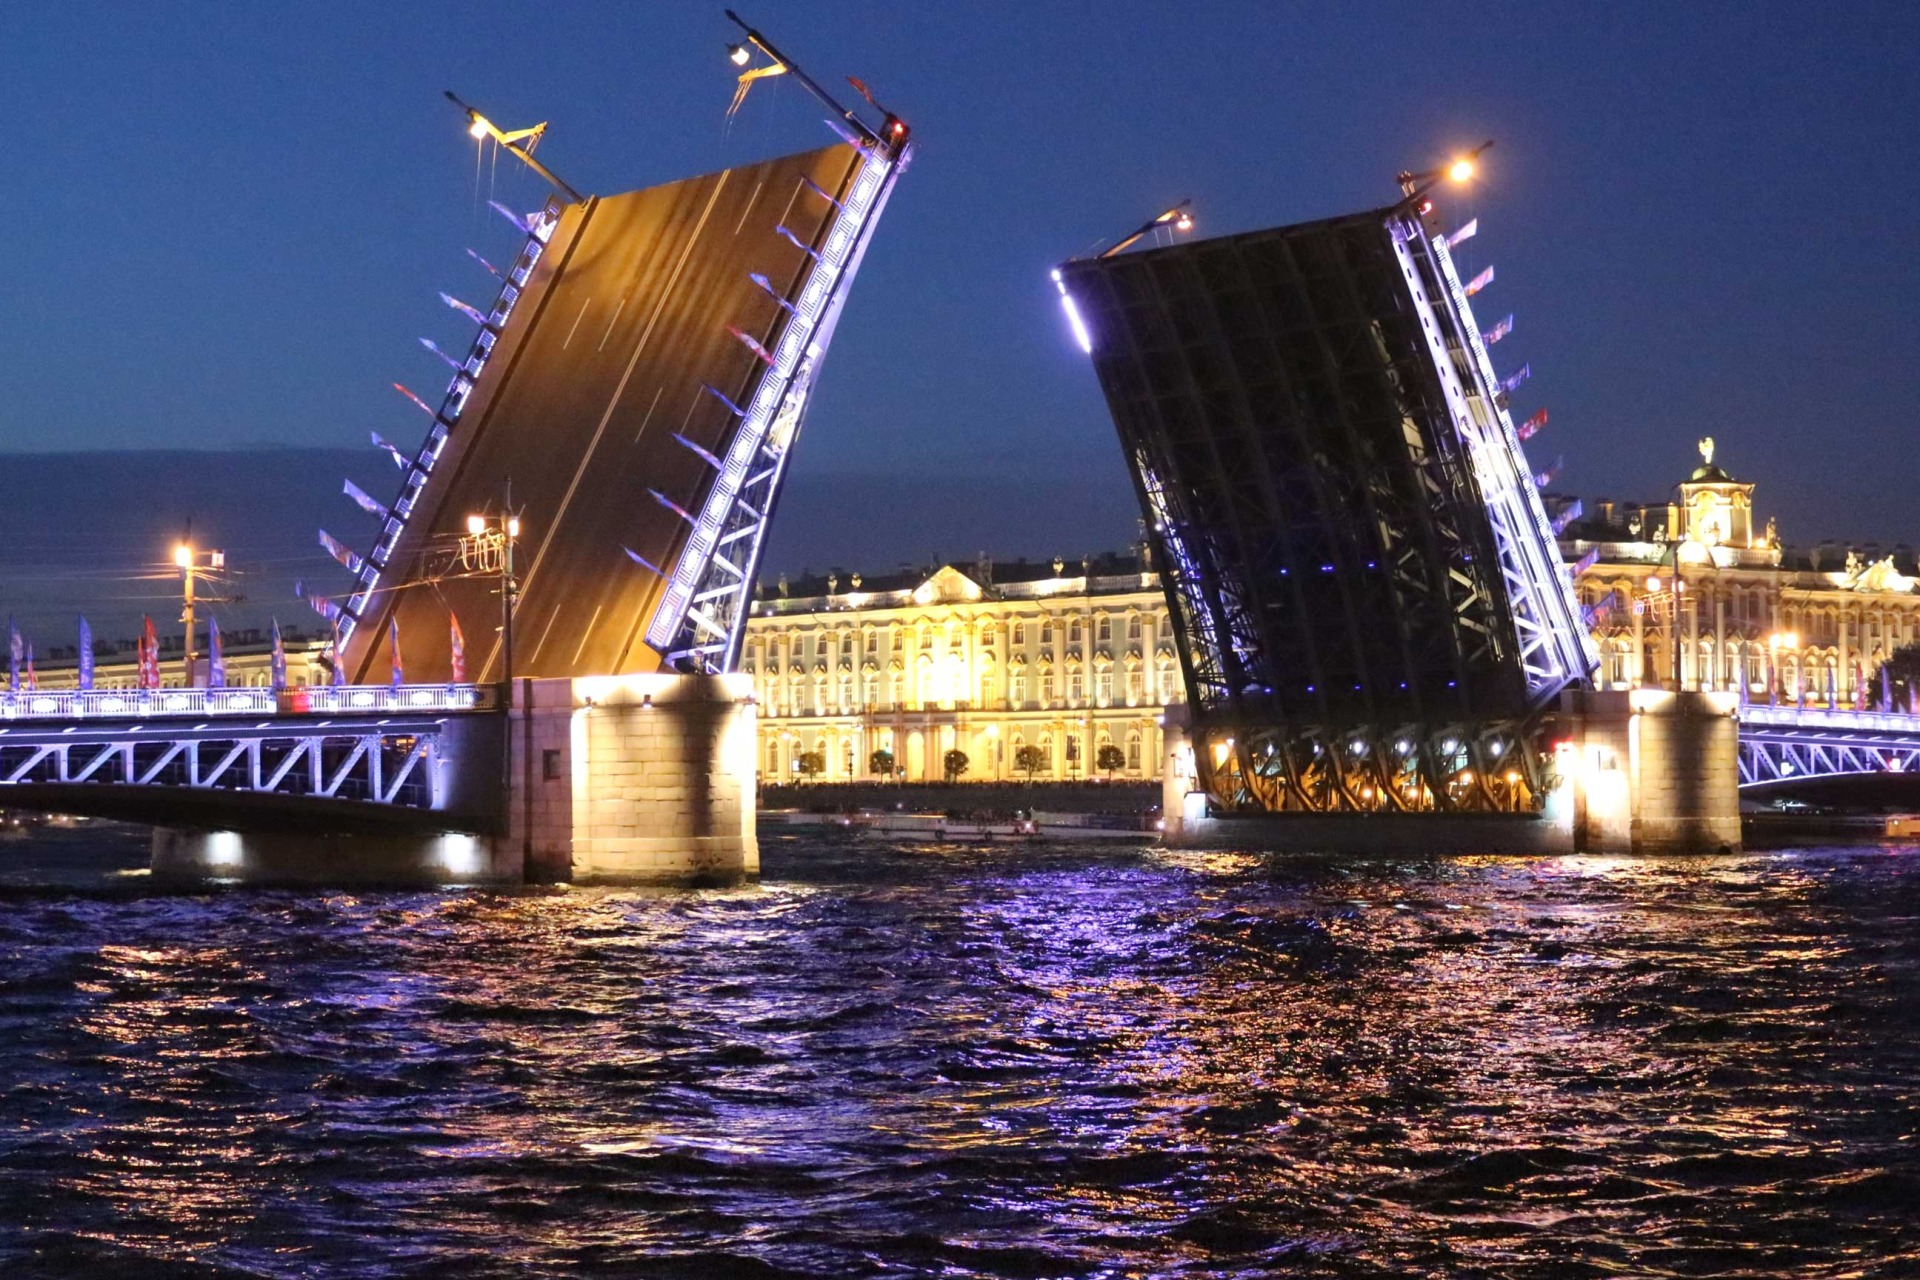 водные экскурсии и прогулки по рекам и каналам Санкт-Петербурга, бронирование, заказ и покупка билетов онлайн